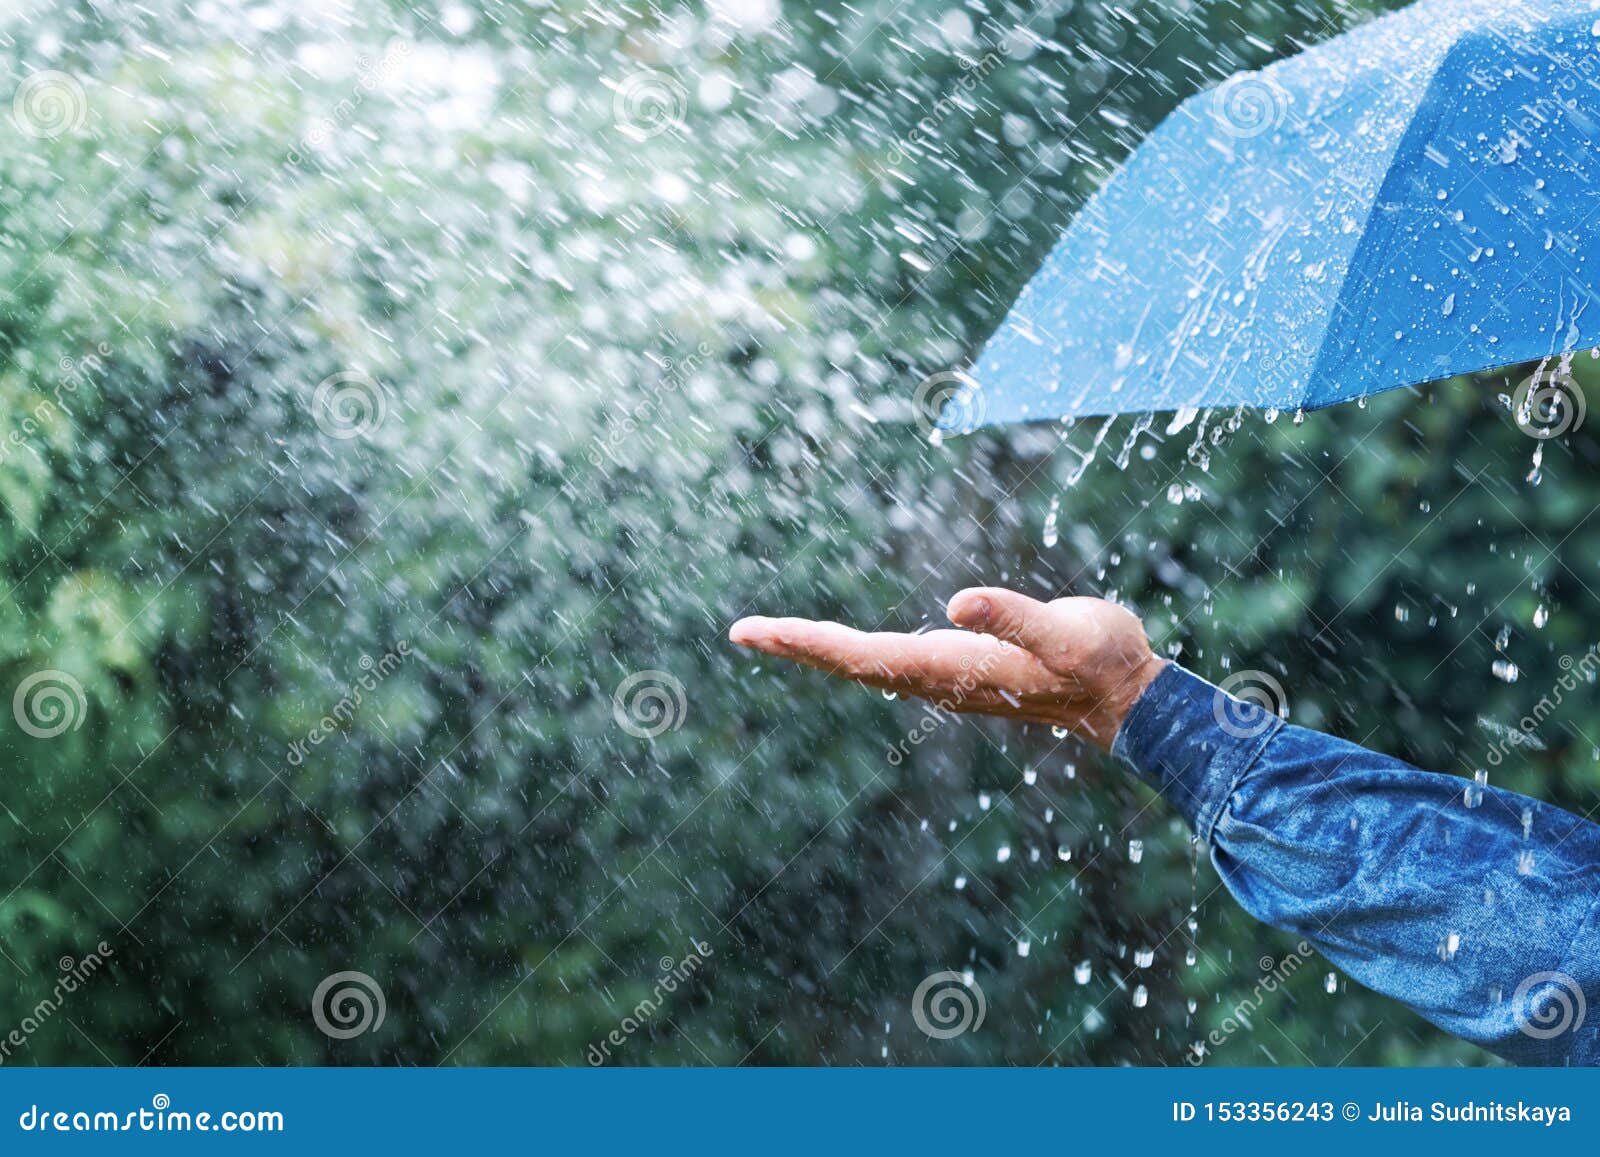 Rain Nature Dp For Whatsapp For Girls - img-lollygag